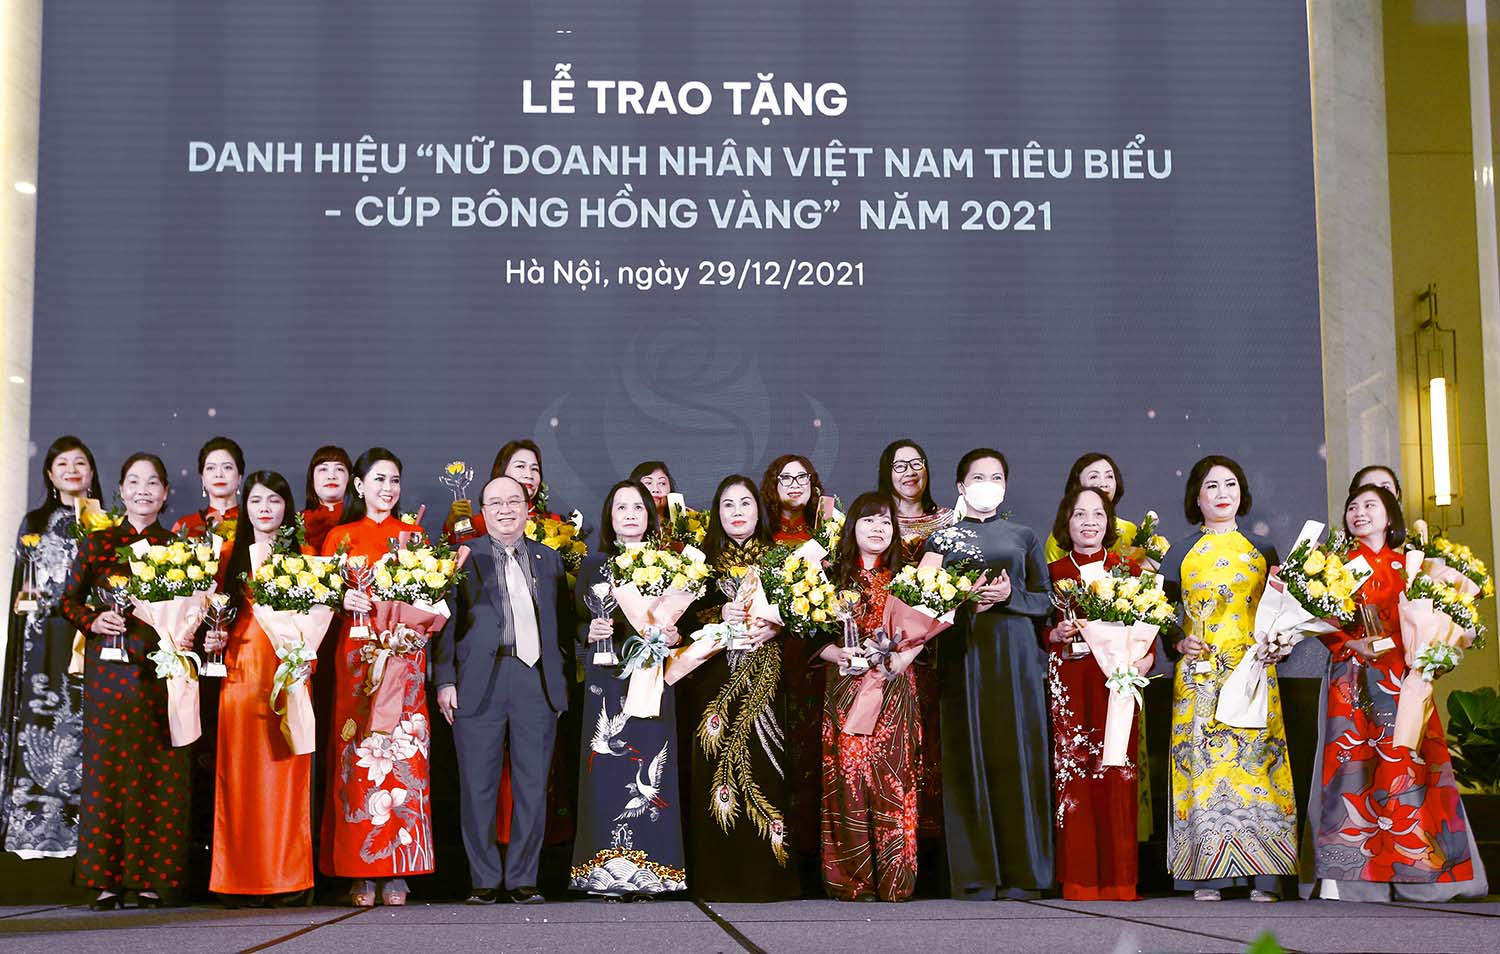 Danh hiệu “Nữ doanh nhân Việt Nam tiêu biểu - Cúp Bông hồng Vàng” đã được trao tặng cho 60 nữ doanh nhân tiêu biểu trong năm 2021